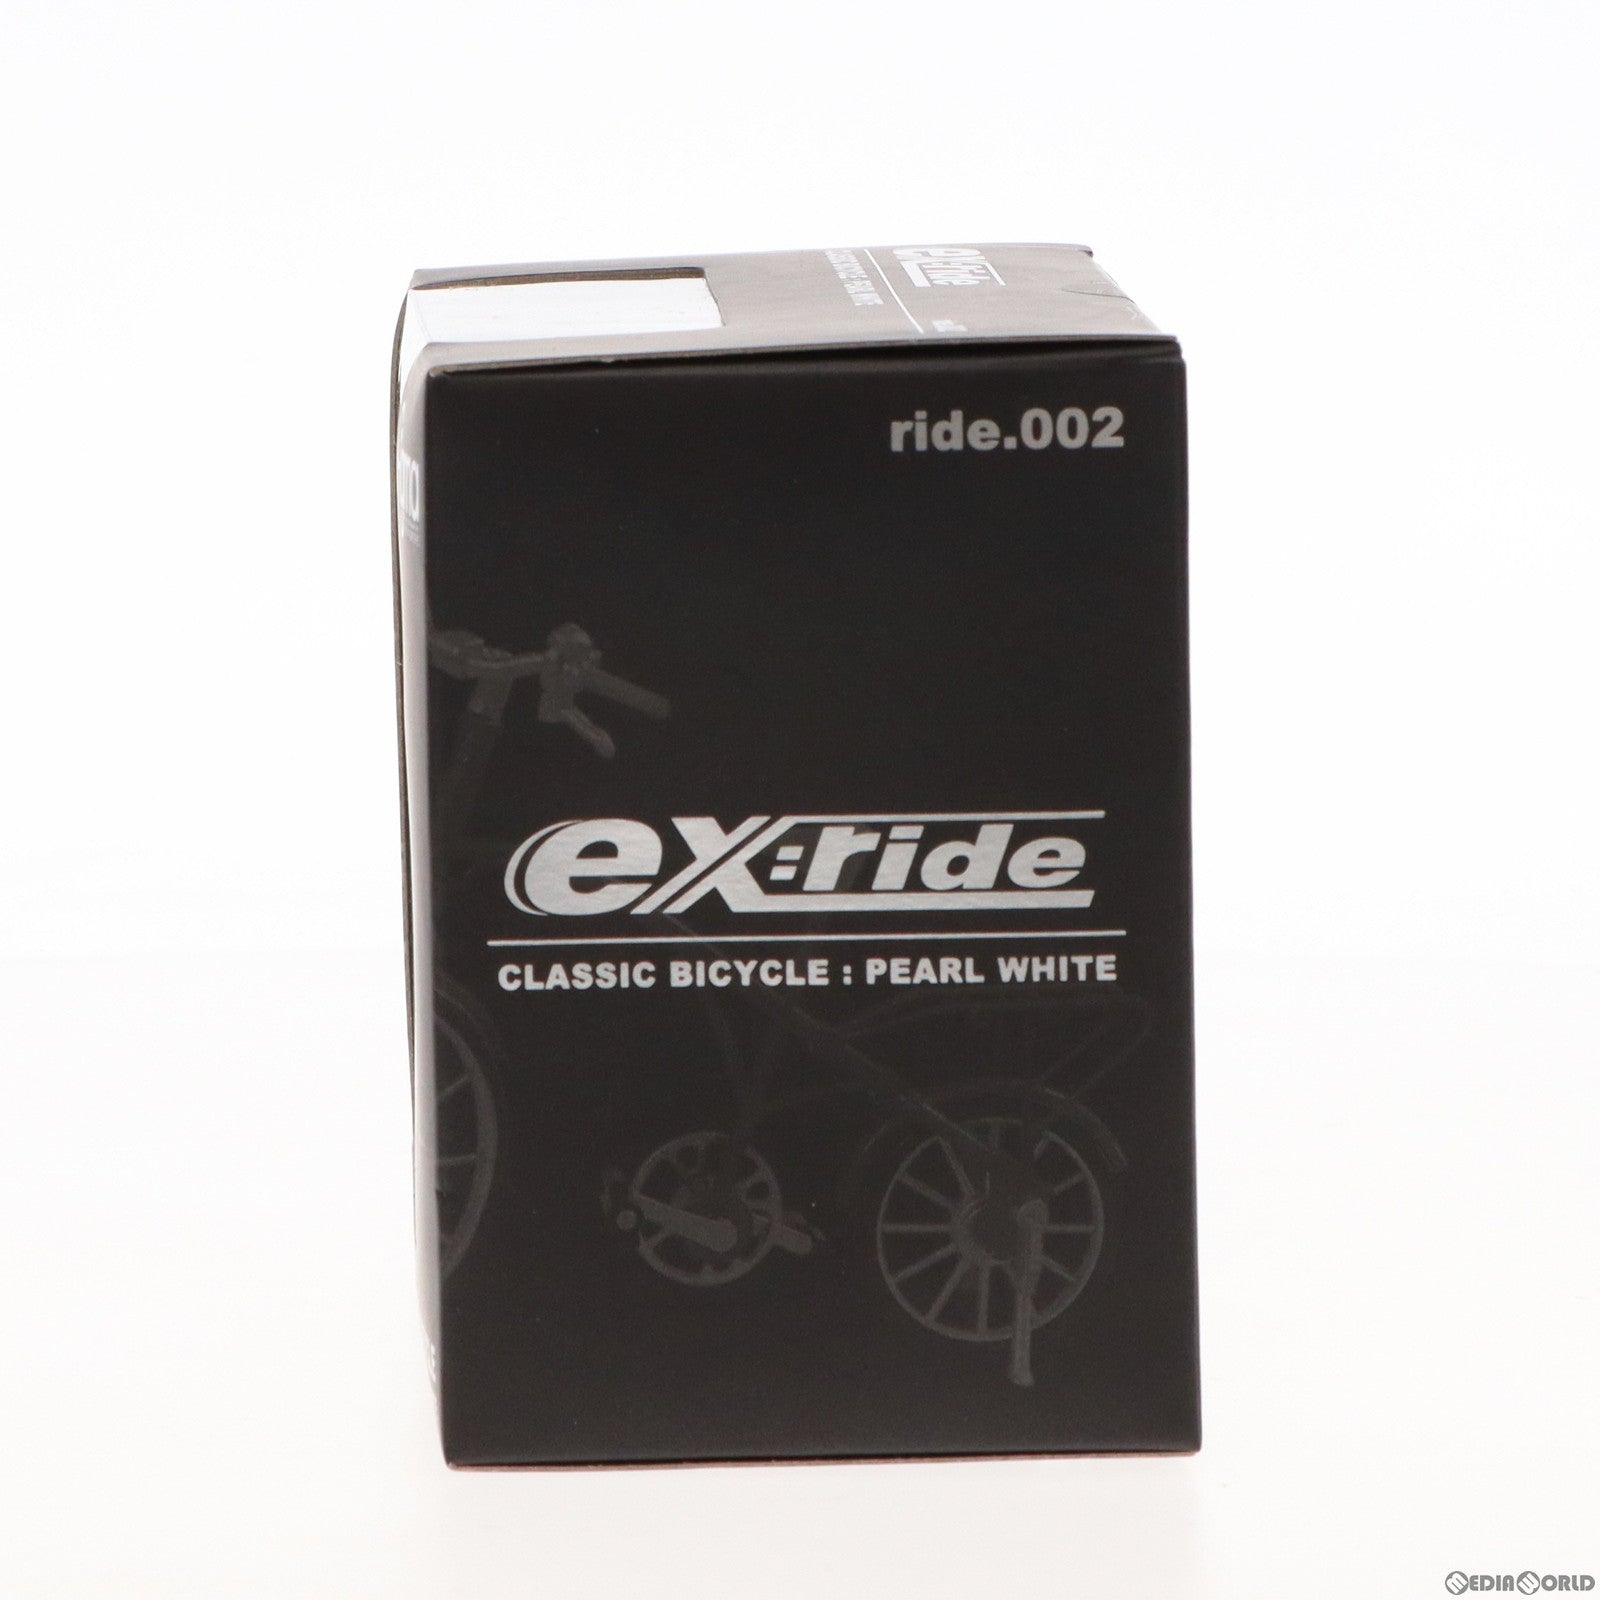 【中古即納】[FIG]ex:ride(エクスライド) ride.002 クラシック自転車 パールホワイト ex:ride 完成品 フィギュア FREEing(フリーイング)(20100131)